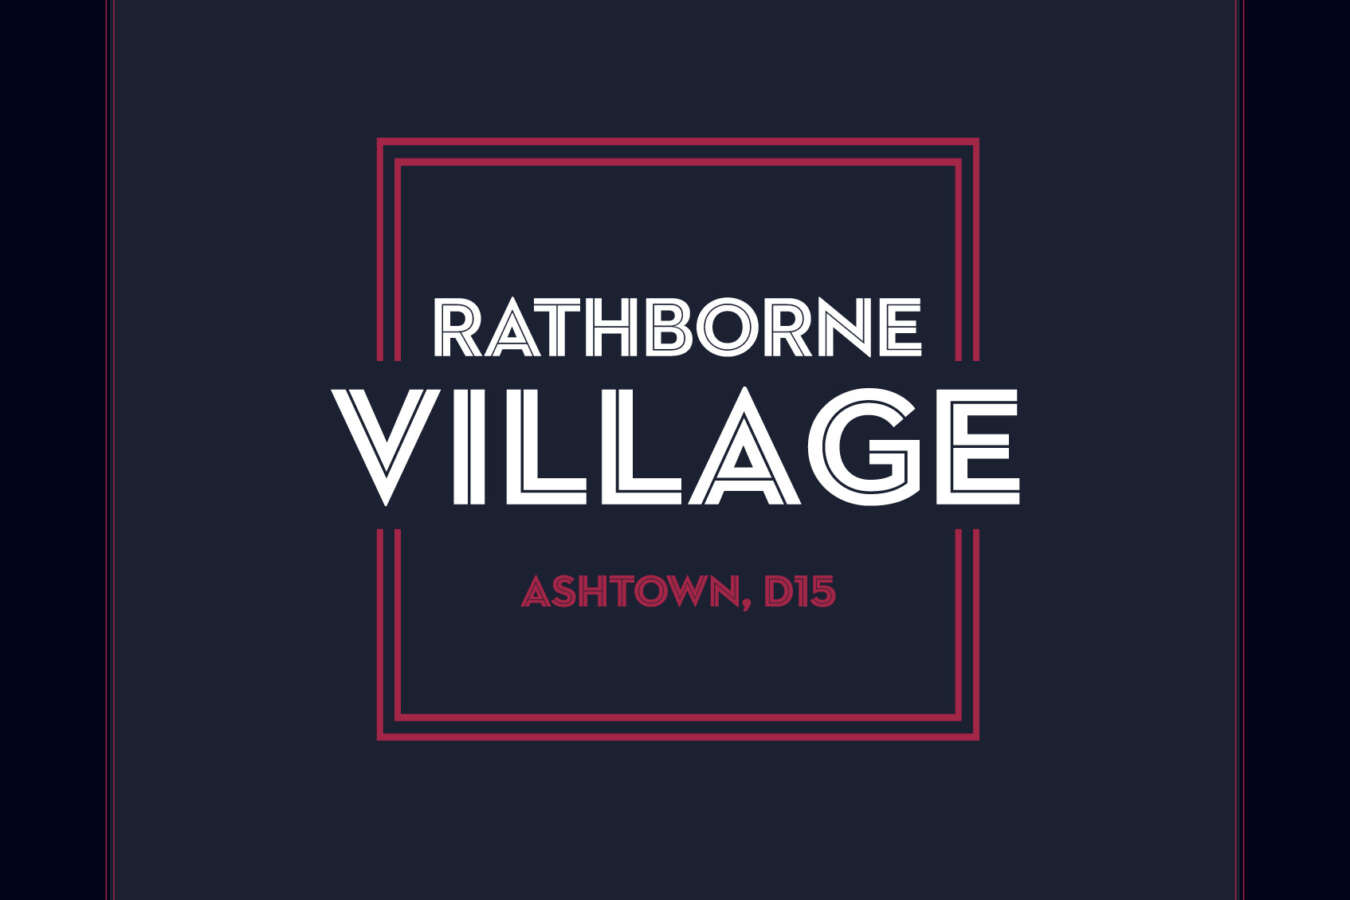 Rathborne Villlage